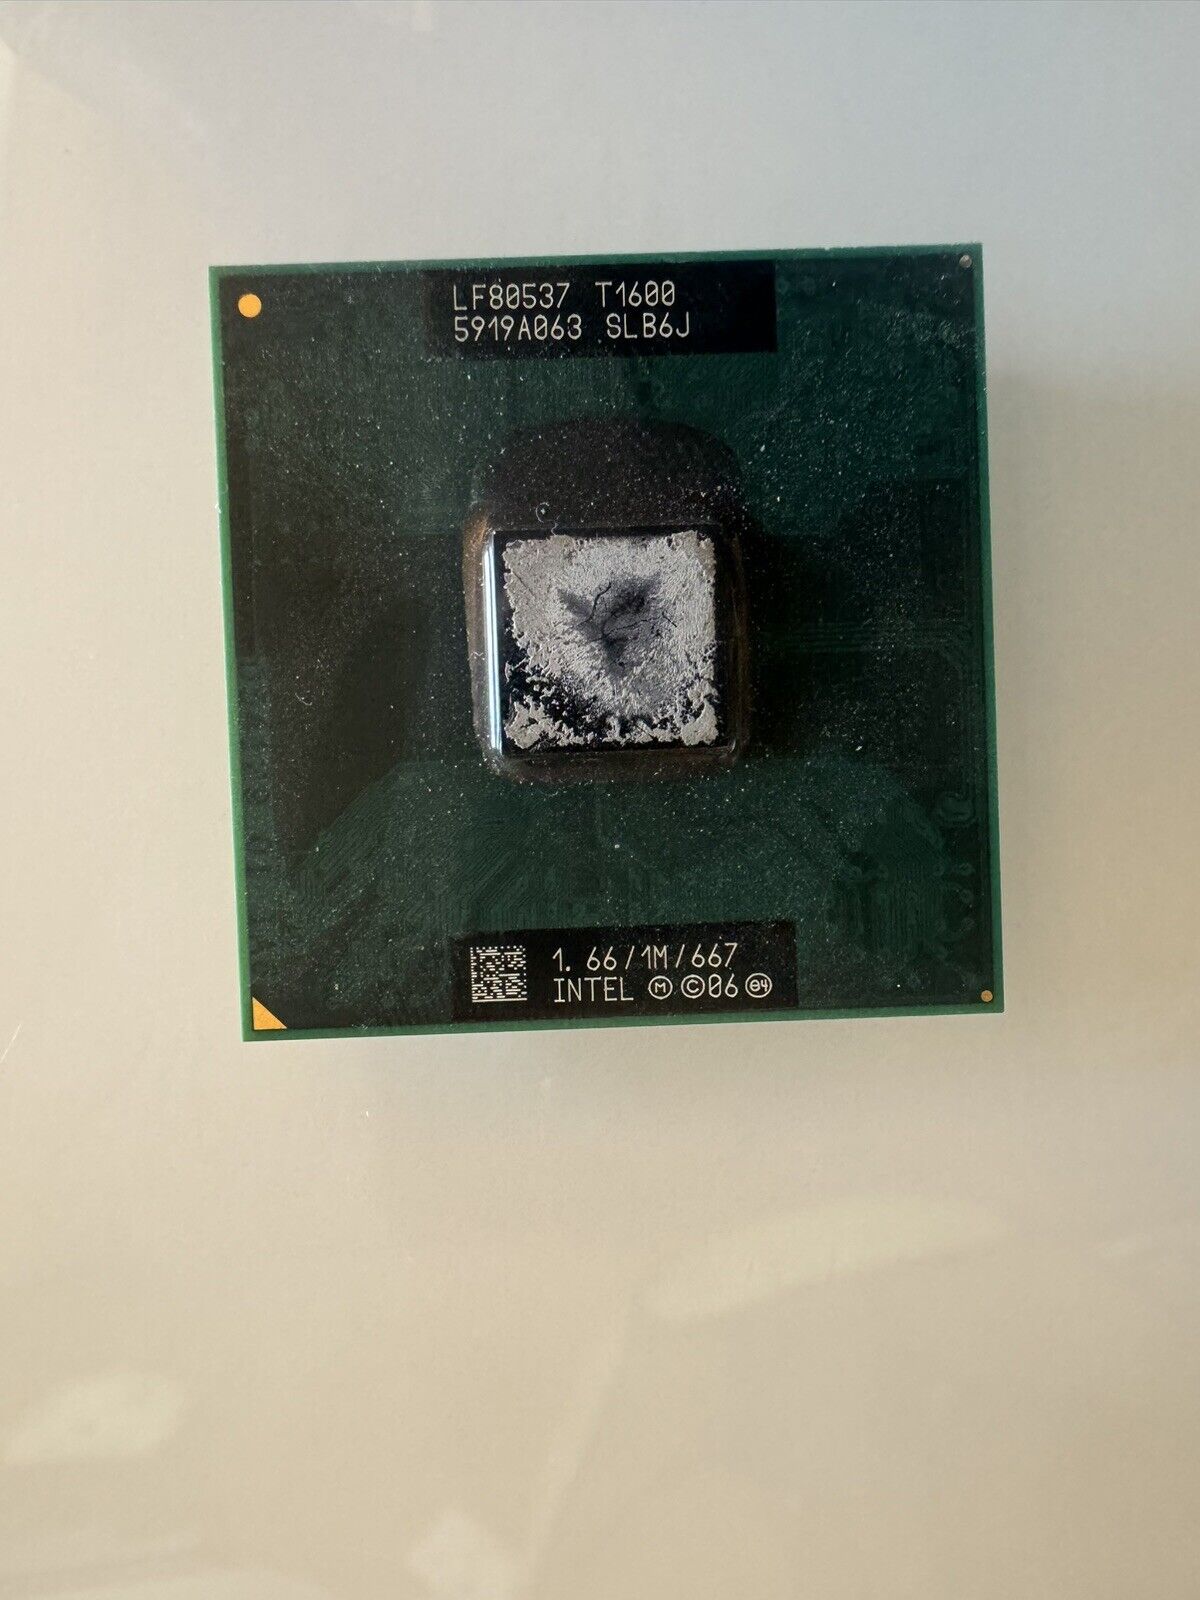 Intel Celeron Mobile CPU 1.66 GHz / 1M / 667 Mhz FSB Dual Core T1600 SLB6J